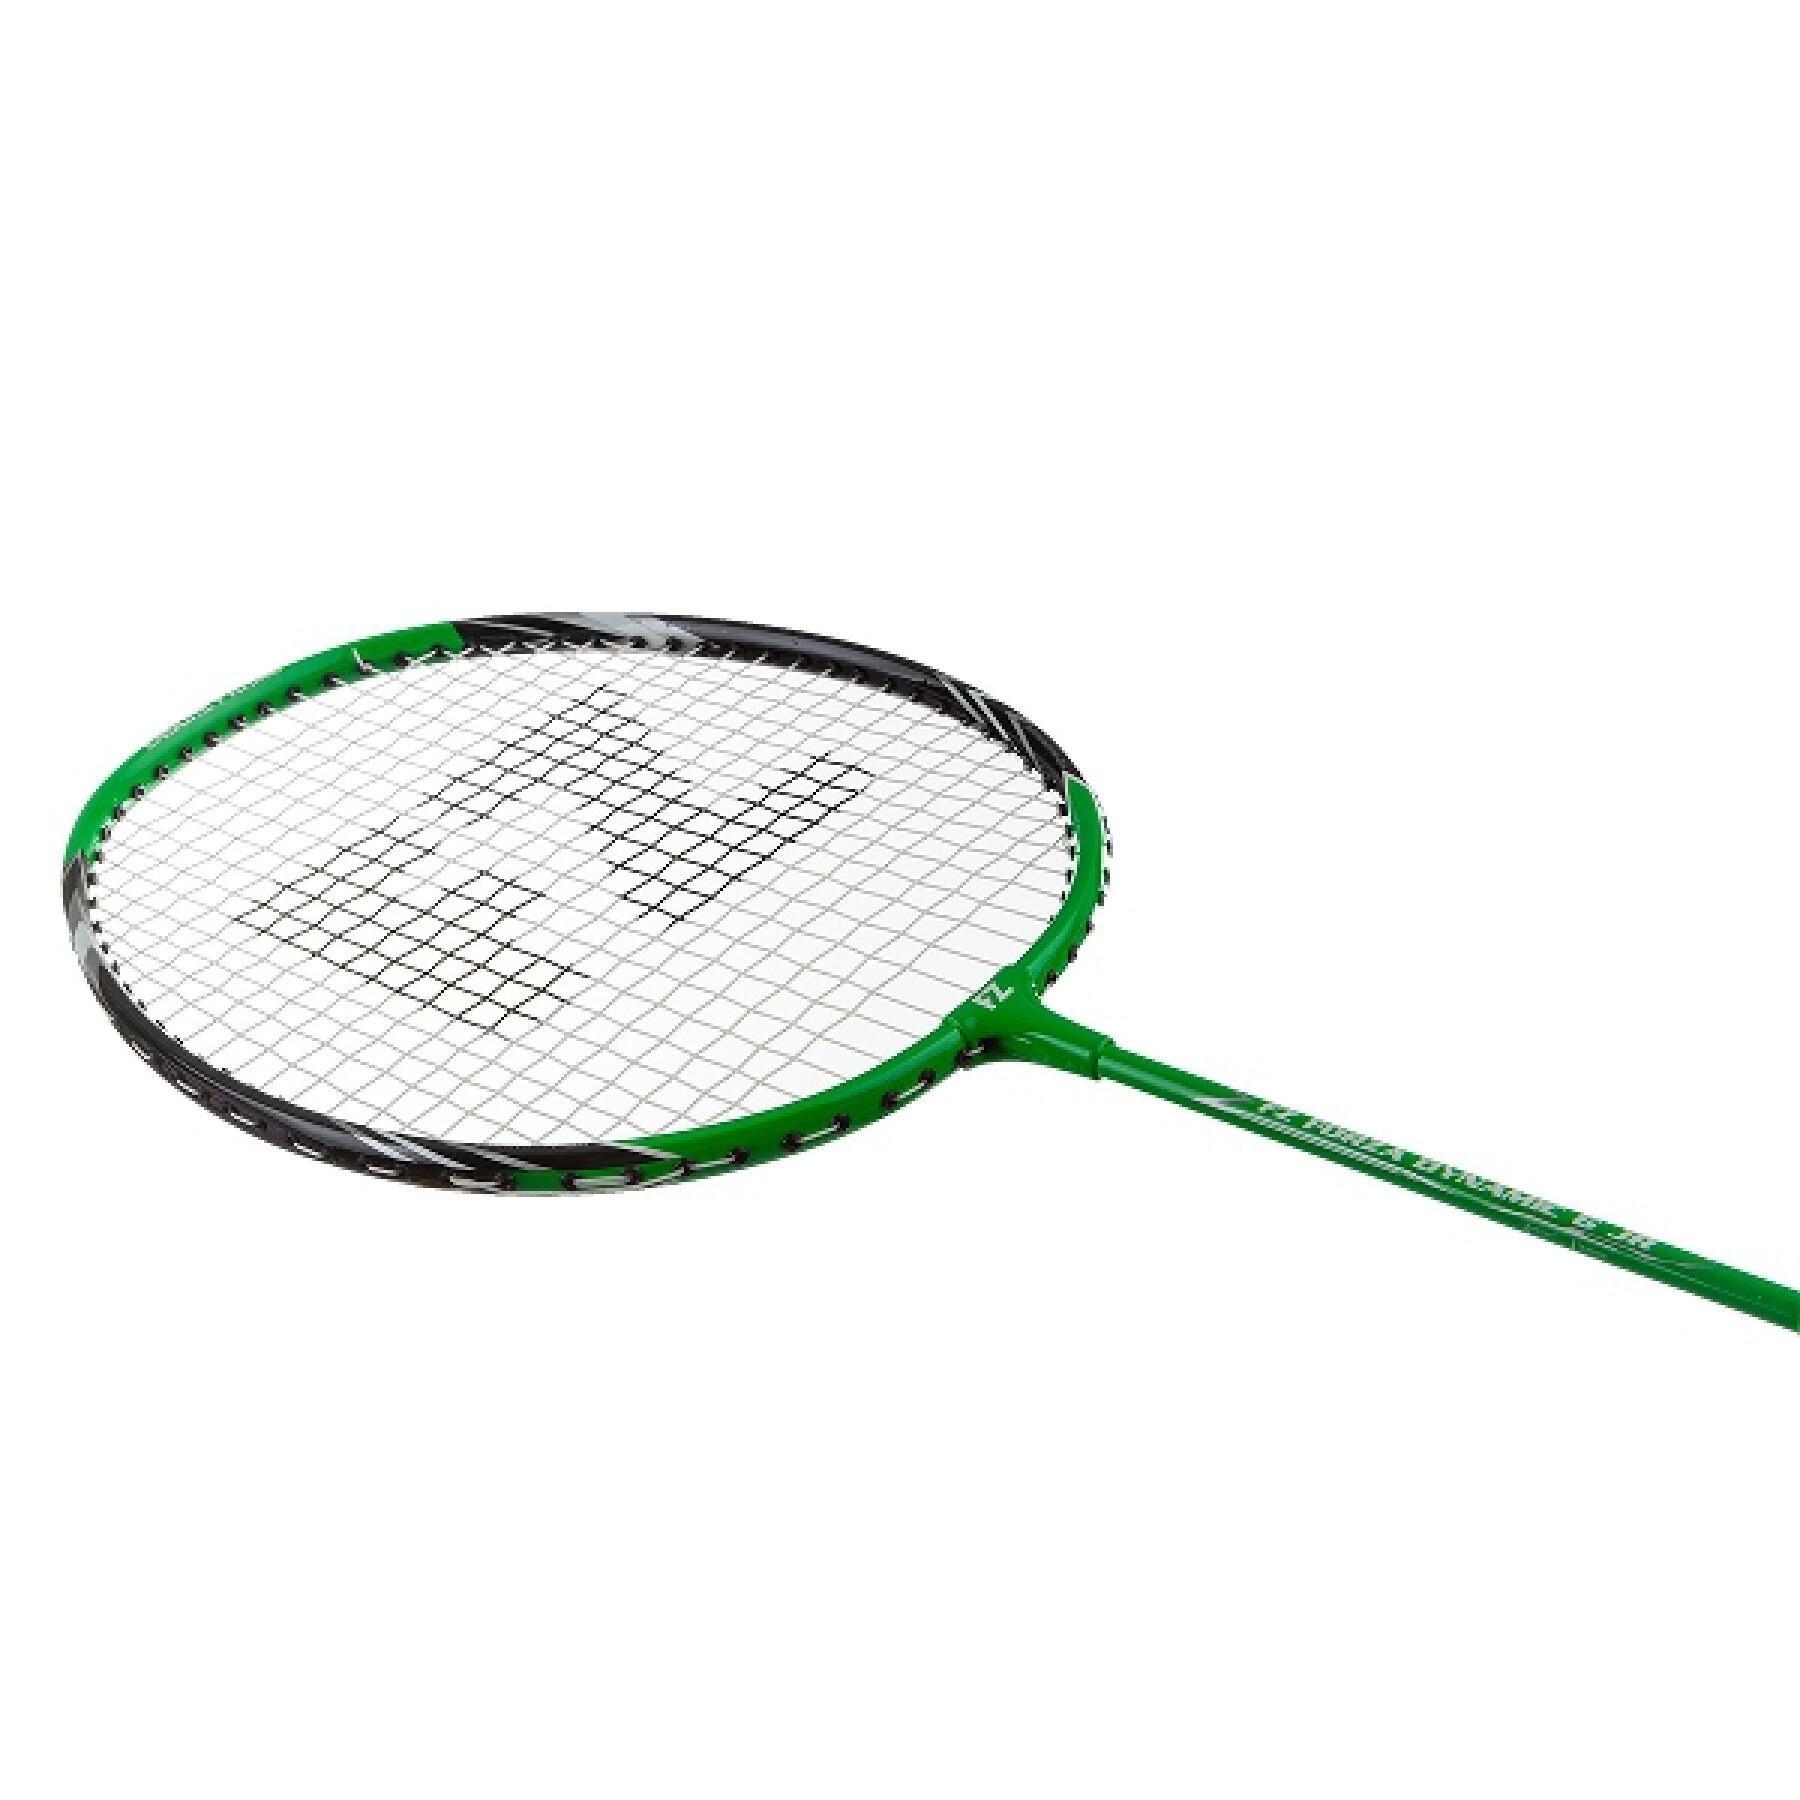 Children's racket FZ Forza Dynamic 6